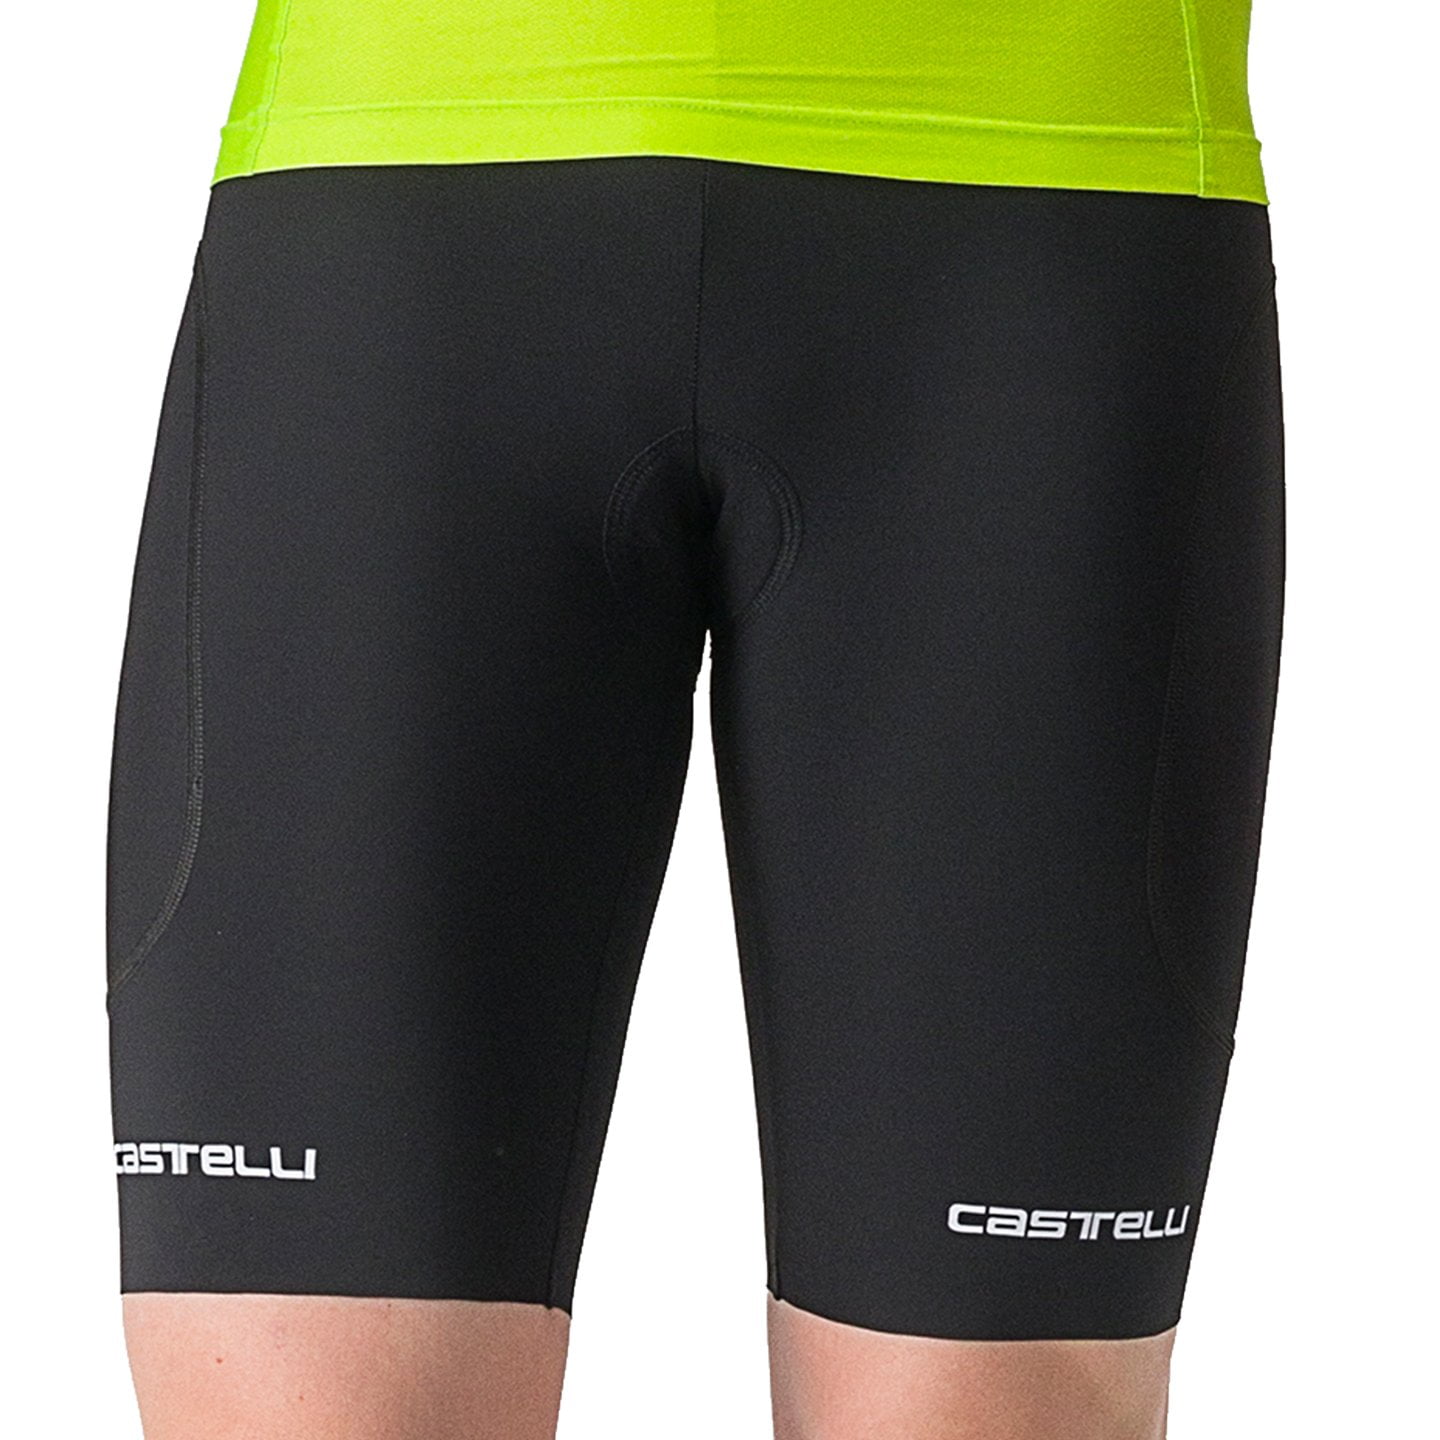 CASTELLI Ride-Run Tri Shorts, for men, size L, Triathlon shorts, Triathlon wear